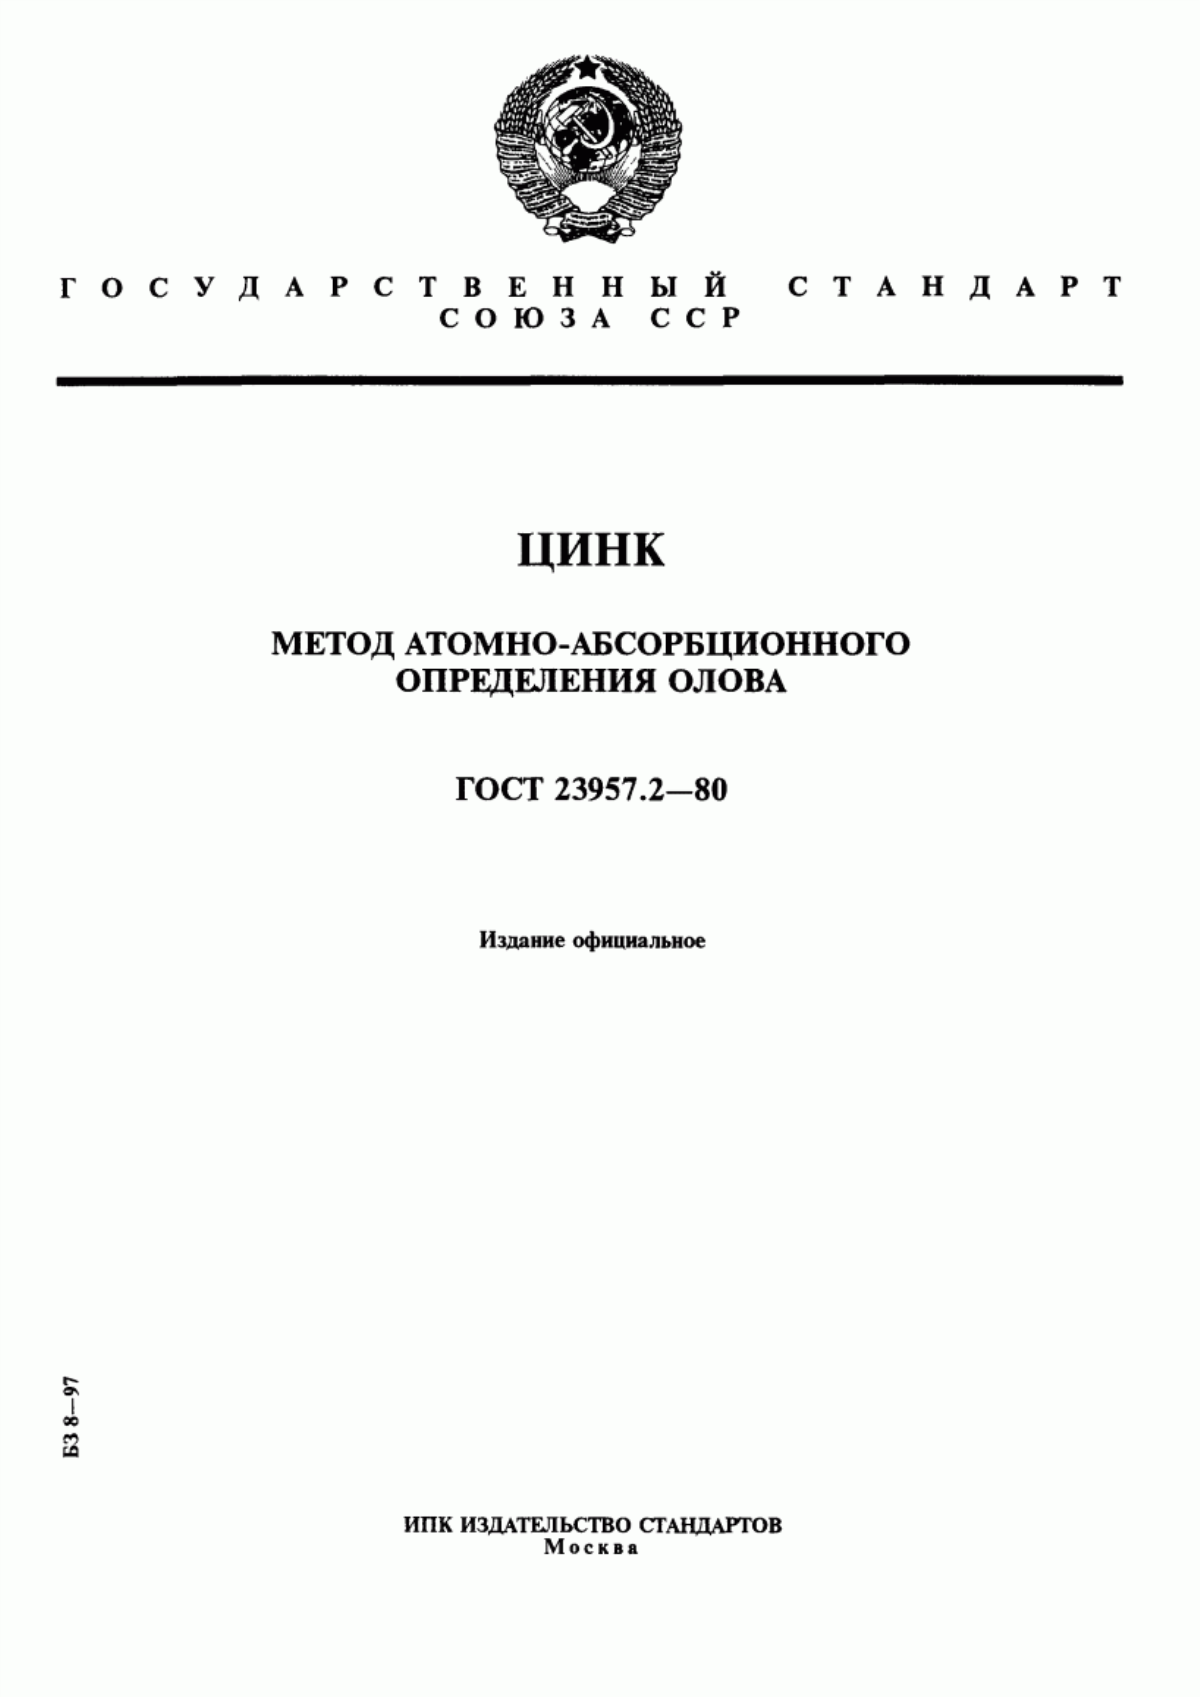 Курсовая работа: Определение металлических примесей методом атомно-абсорбционной спектрометрии в марганце марки